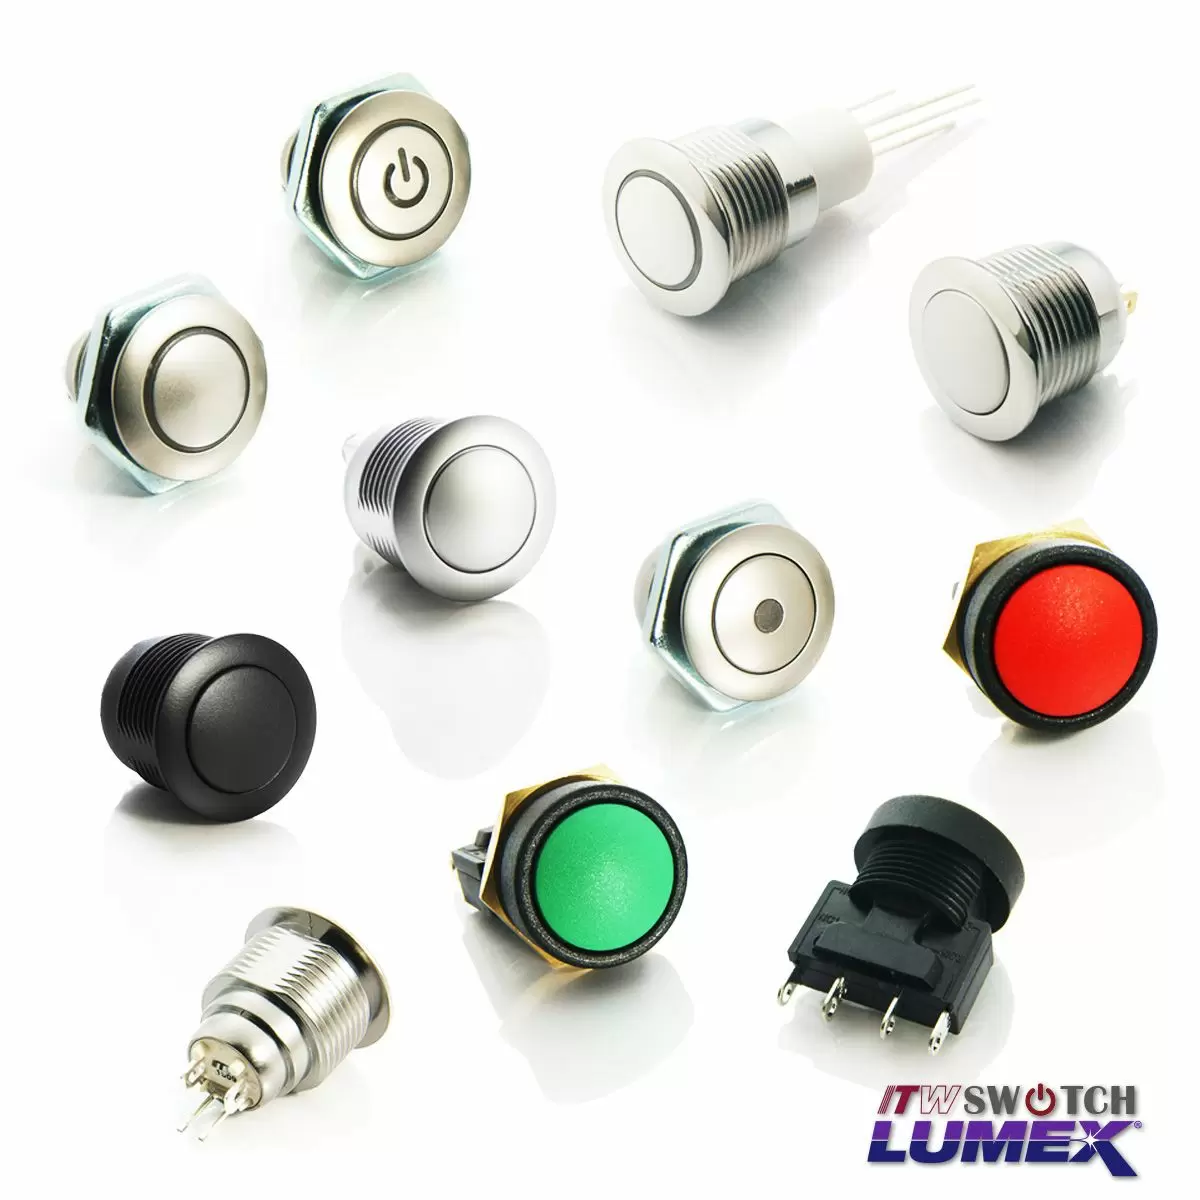 Il pulsante cambia daITW Lumex Switchsono disponibili in una gamma di design, tutti compatibili con un foro del pannello da 16 mm.